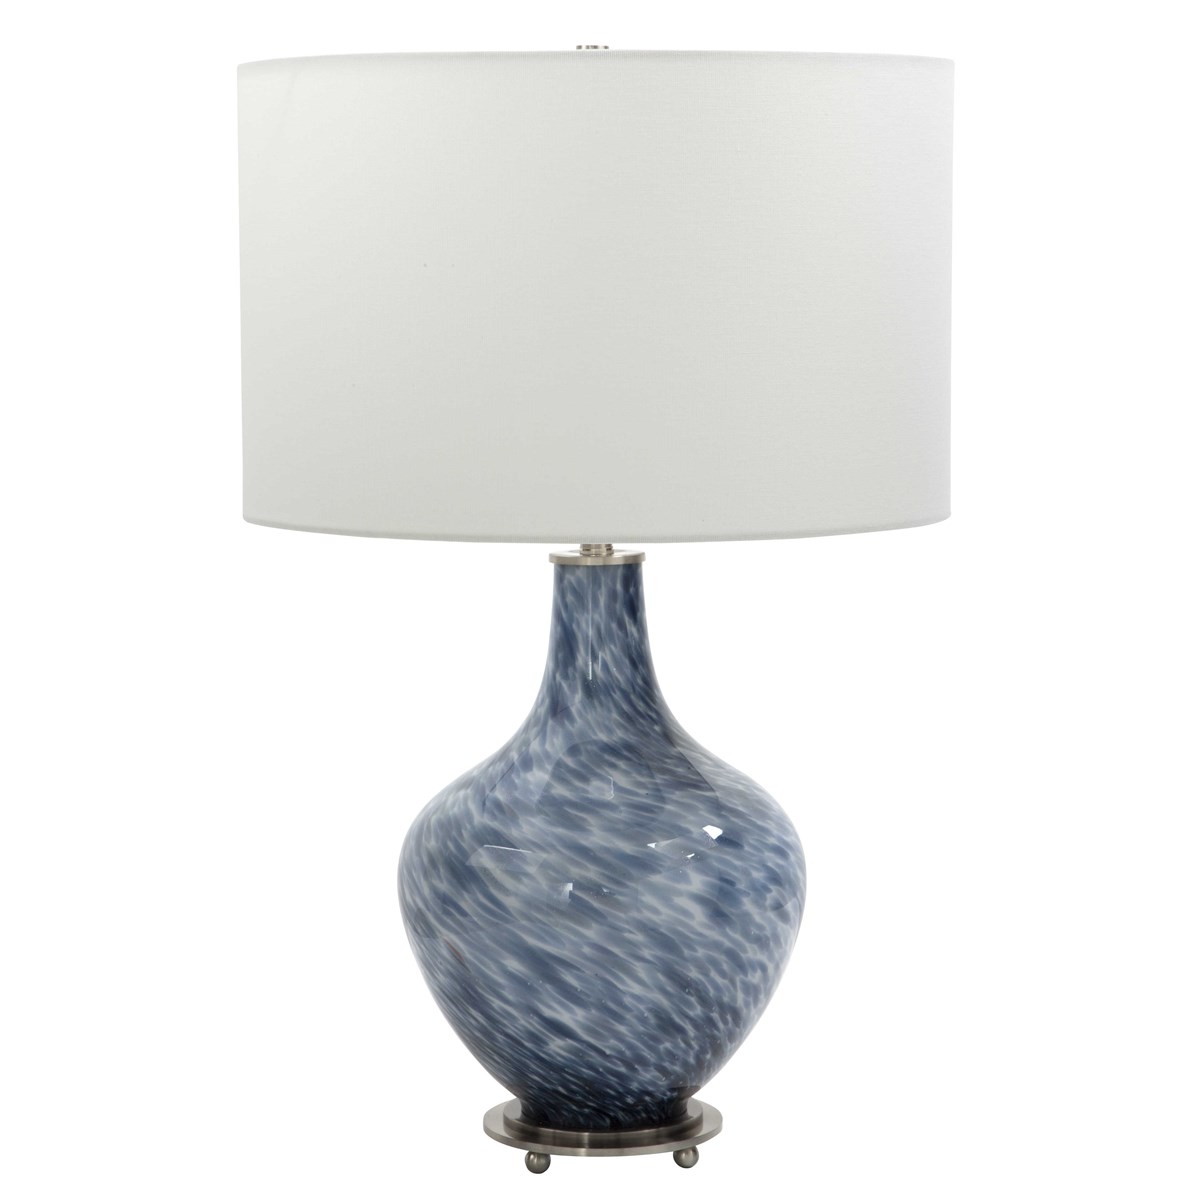 Настольная лампа COVE TABLE LAMP 28482-1 Uttermost США